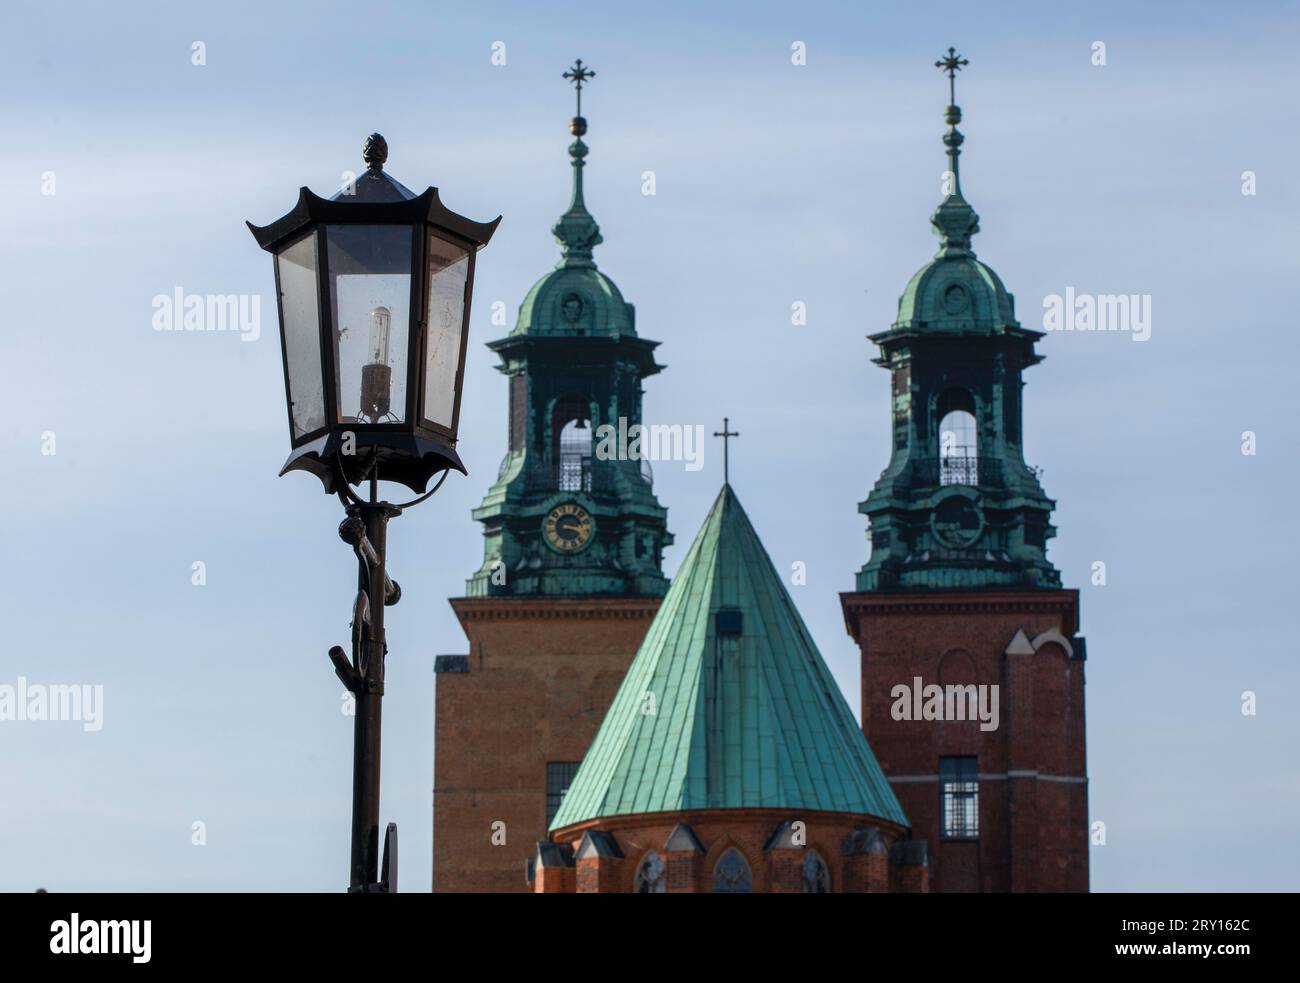 Kathedrale in Giezno, Polen. Alte Stadt Sakralbauten, Architektur der ersten polnischen Hauptstadt. Stockfoto